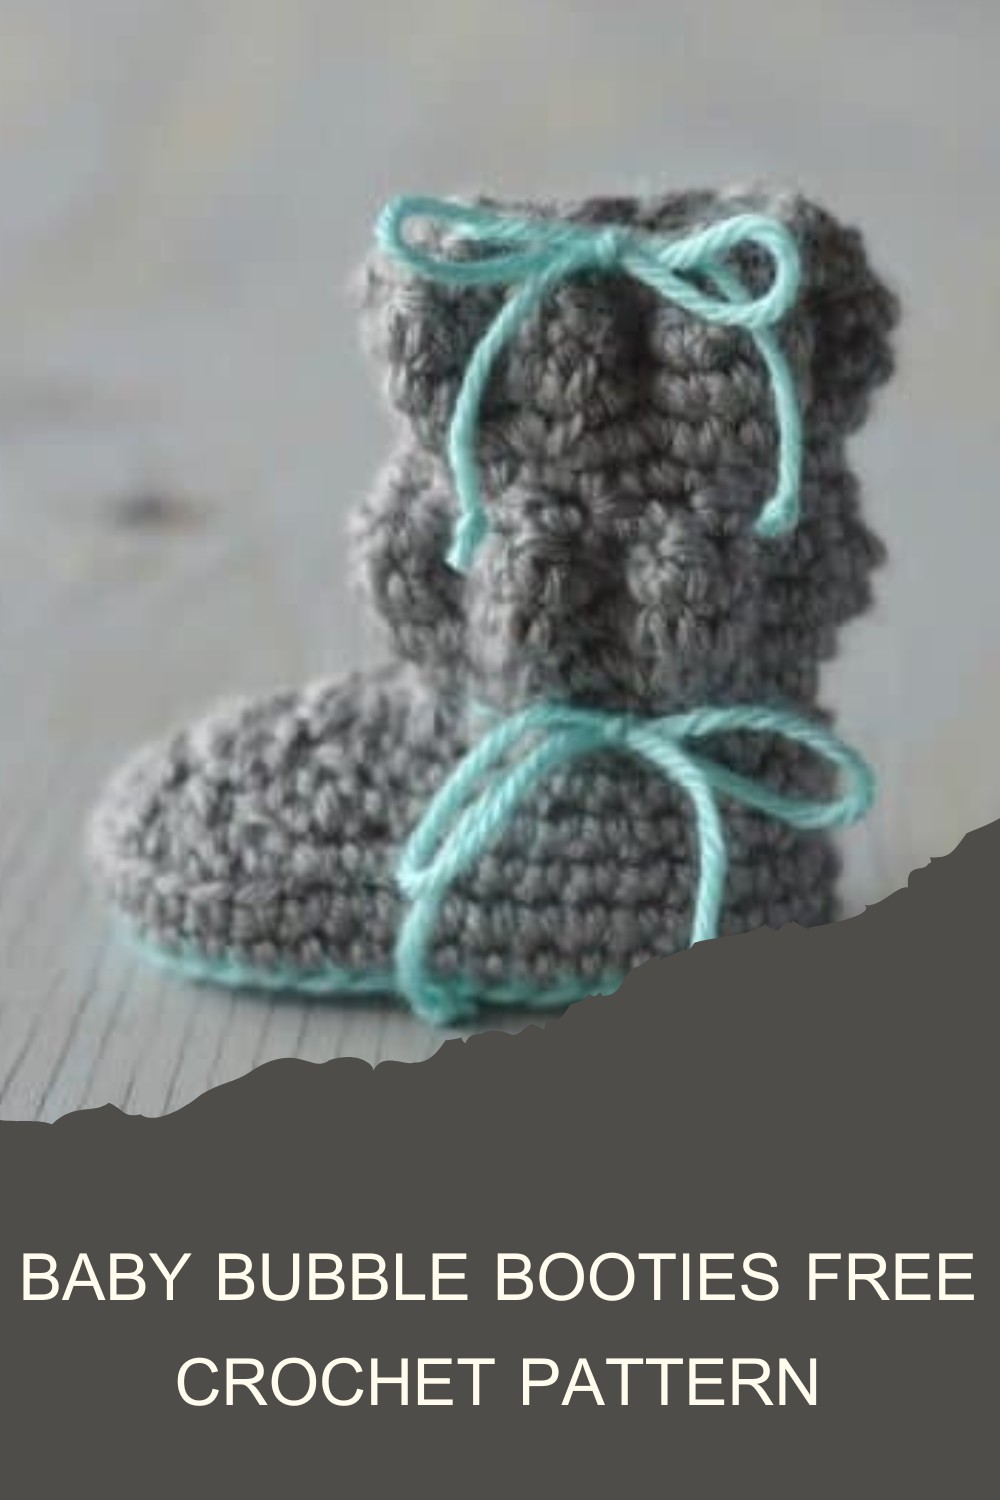 Baby Bubble Booties Free Crochet Pattern